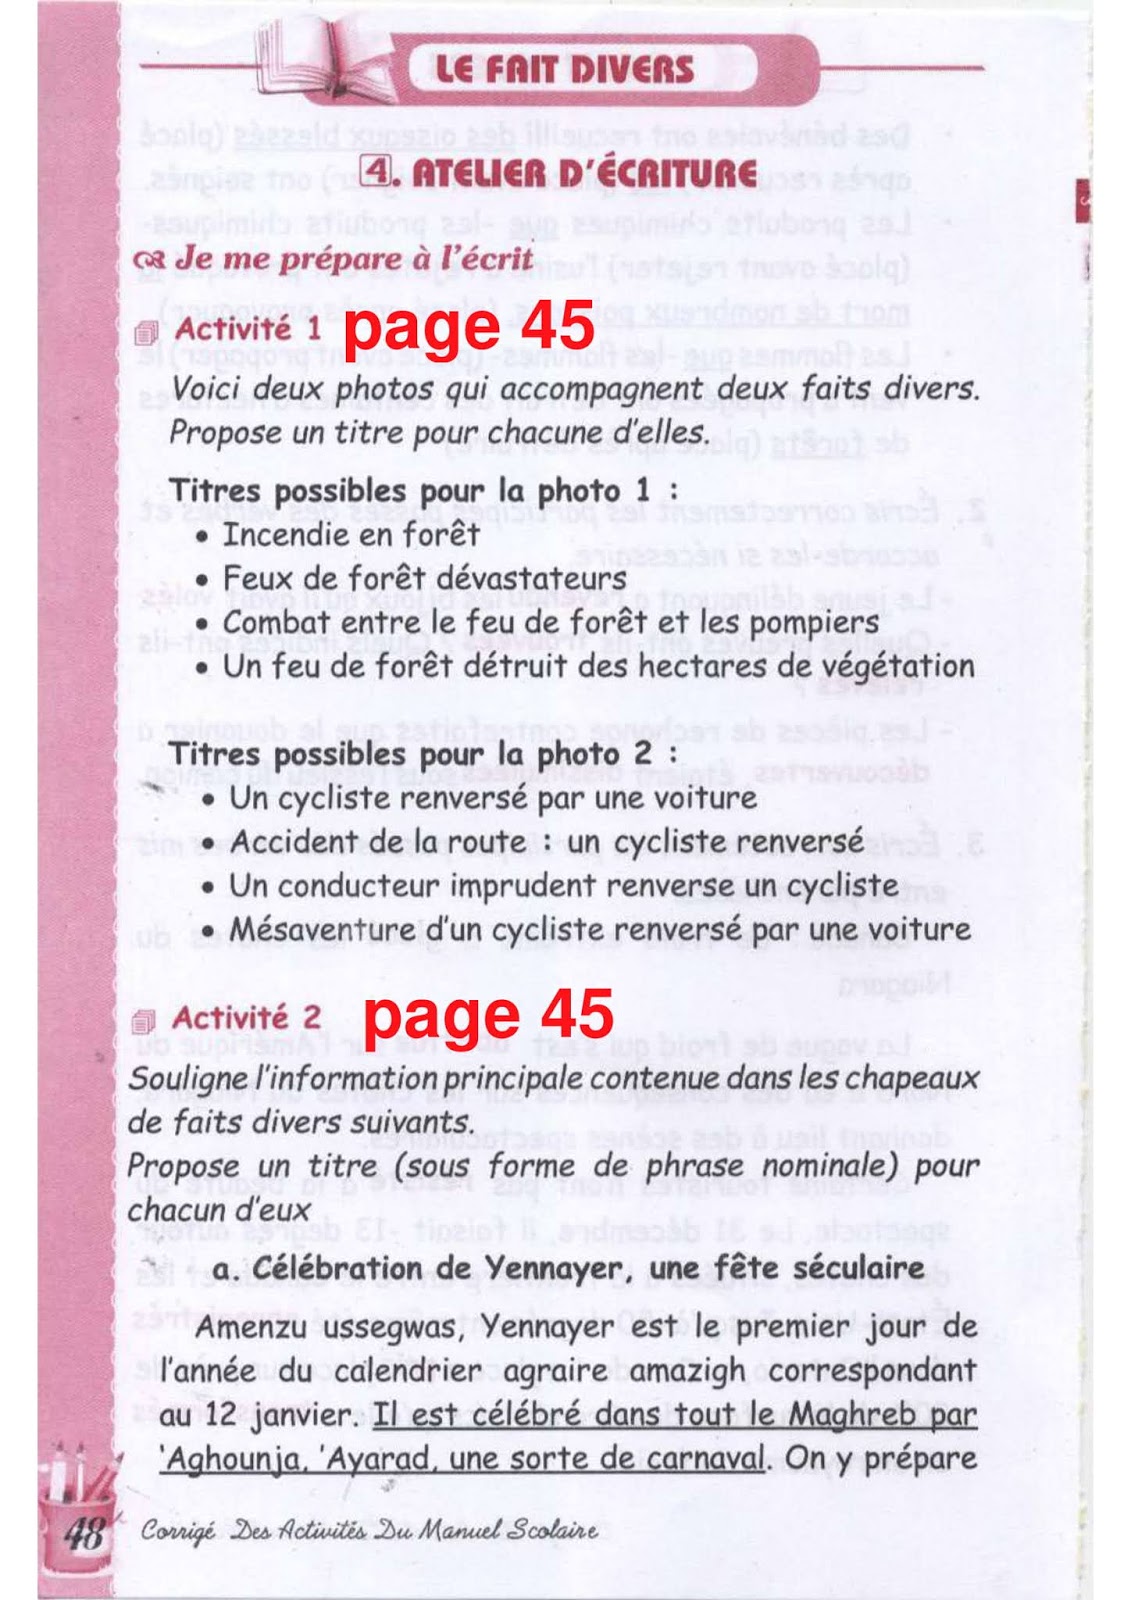 حل تمارين صفحة 45 الفرنسية للسنة الثالثة متوسط - الجيل الثاني